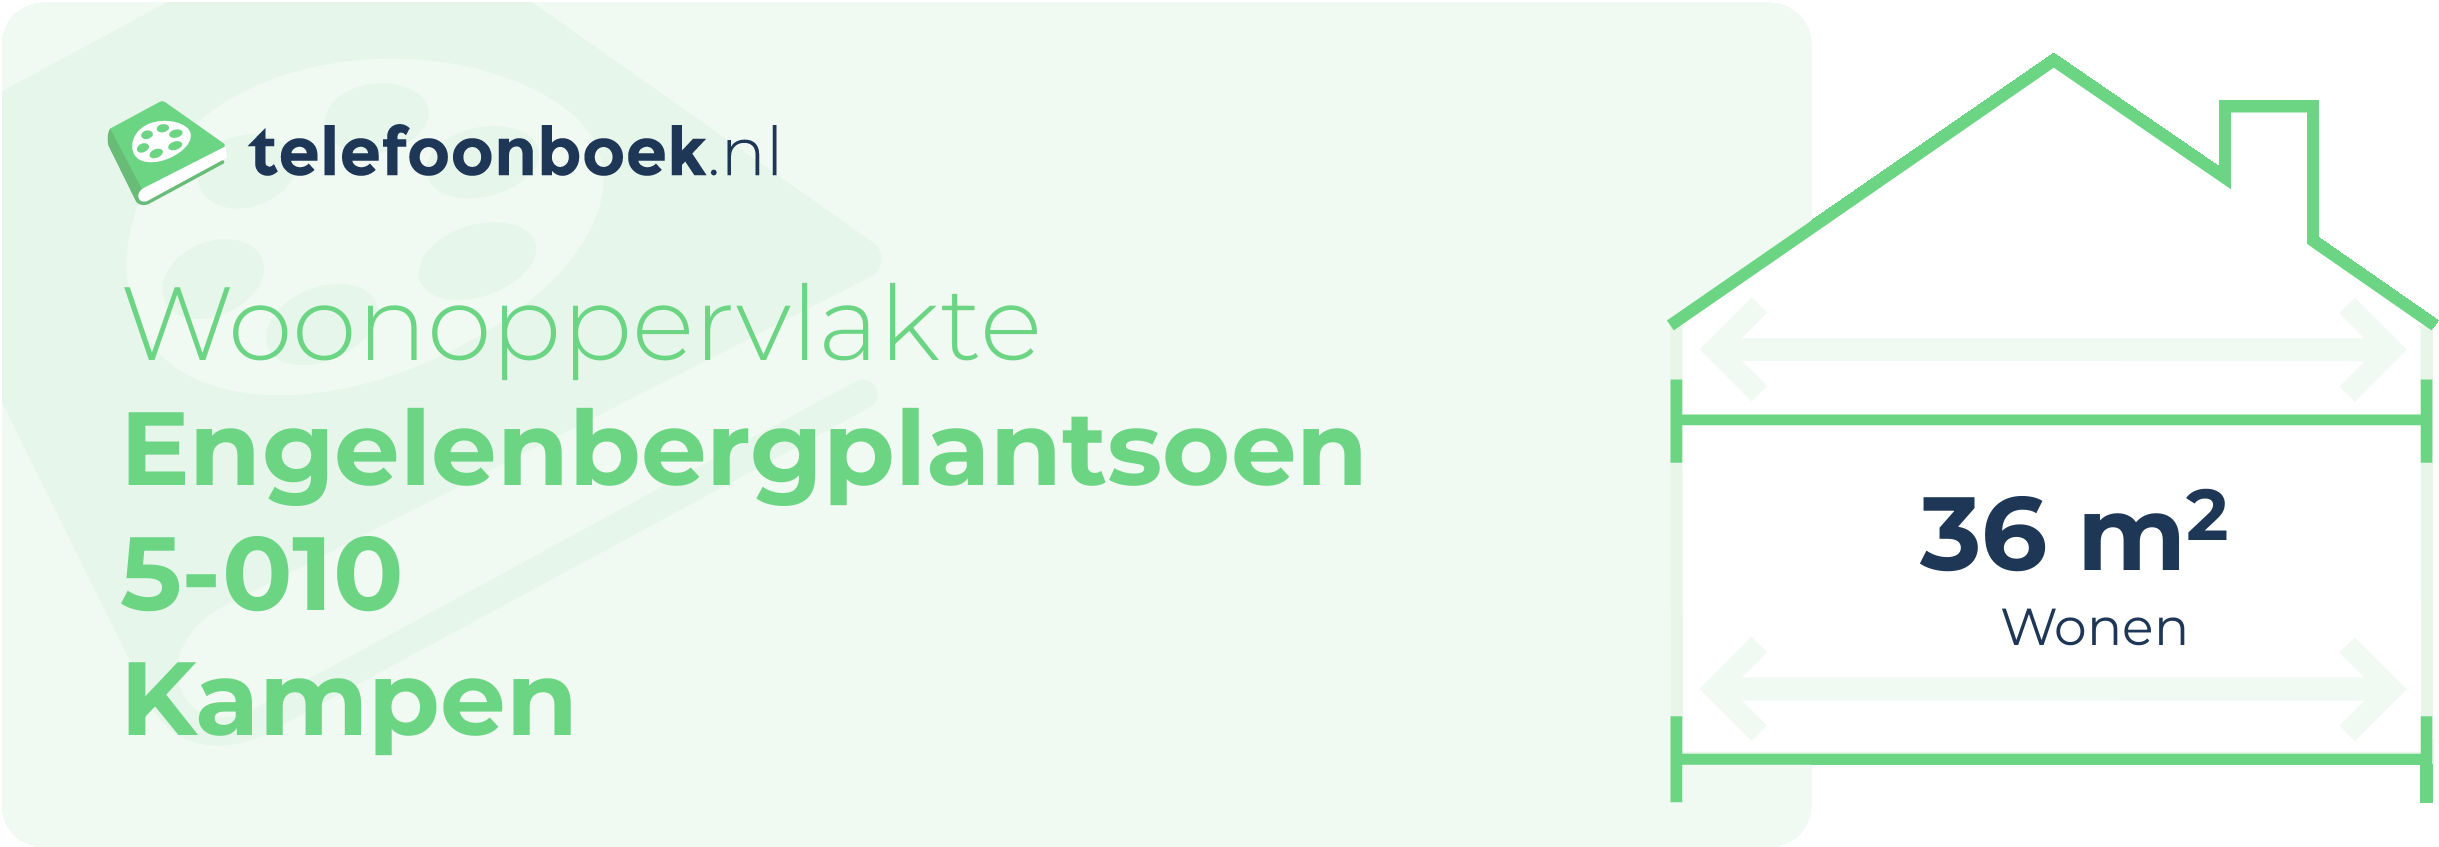 Woonoppervlakte Engelenbergplantsoen 5-010 Kampen